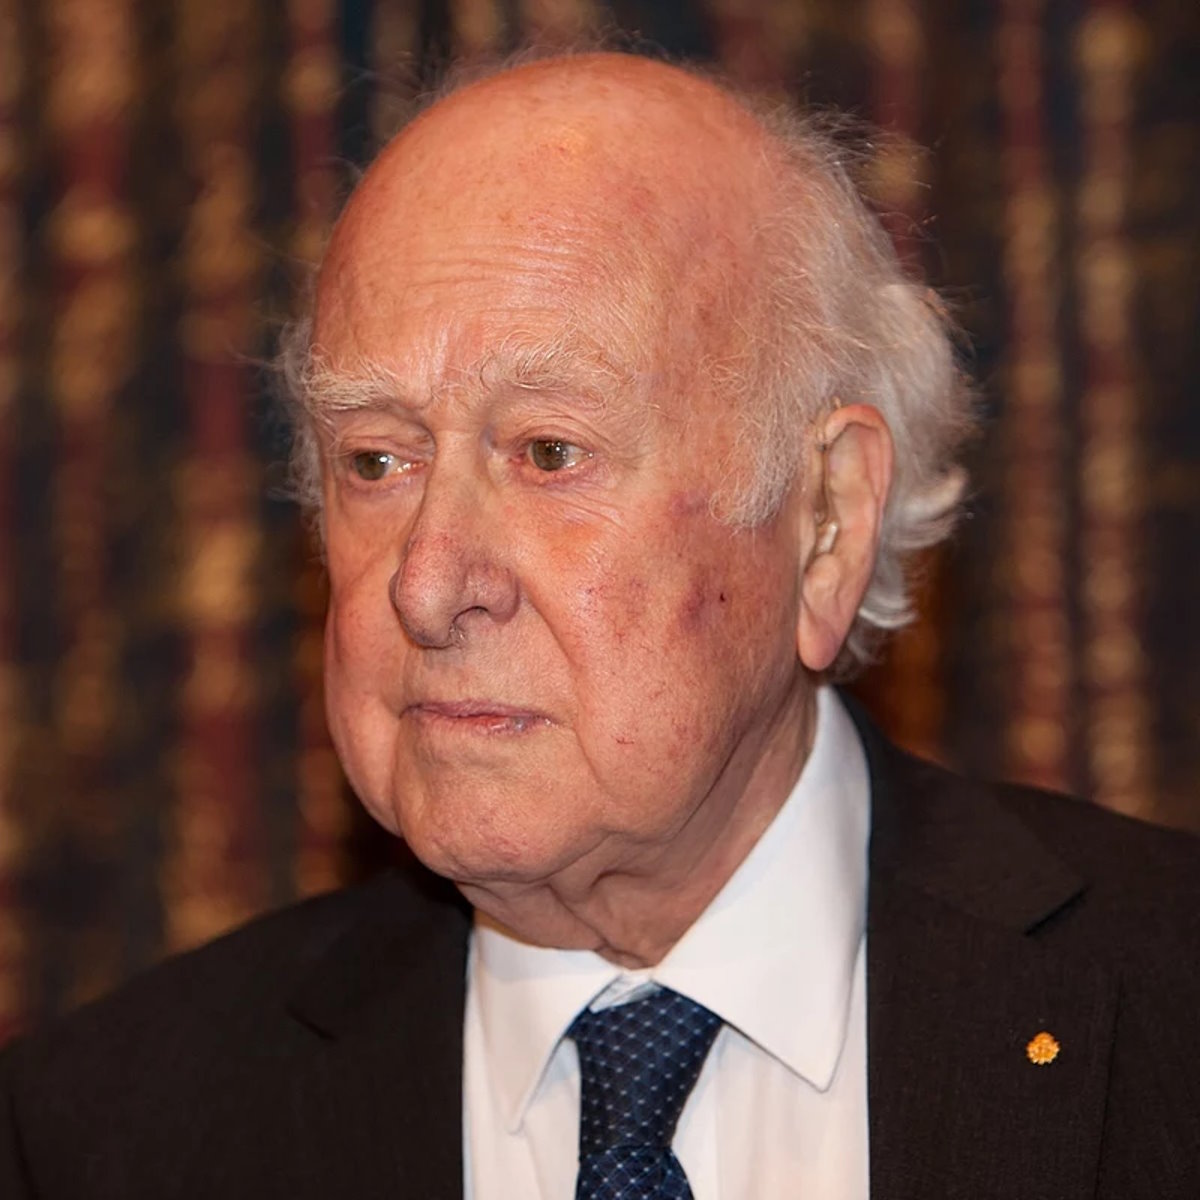 È scomparso a 94 anni dopo una breve malattia Peter Higgs, premio Nobel per la fisica nel 2013